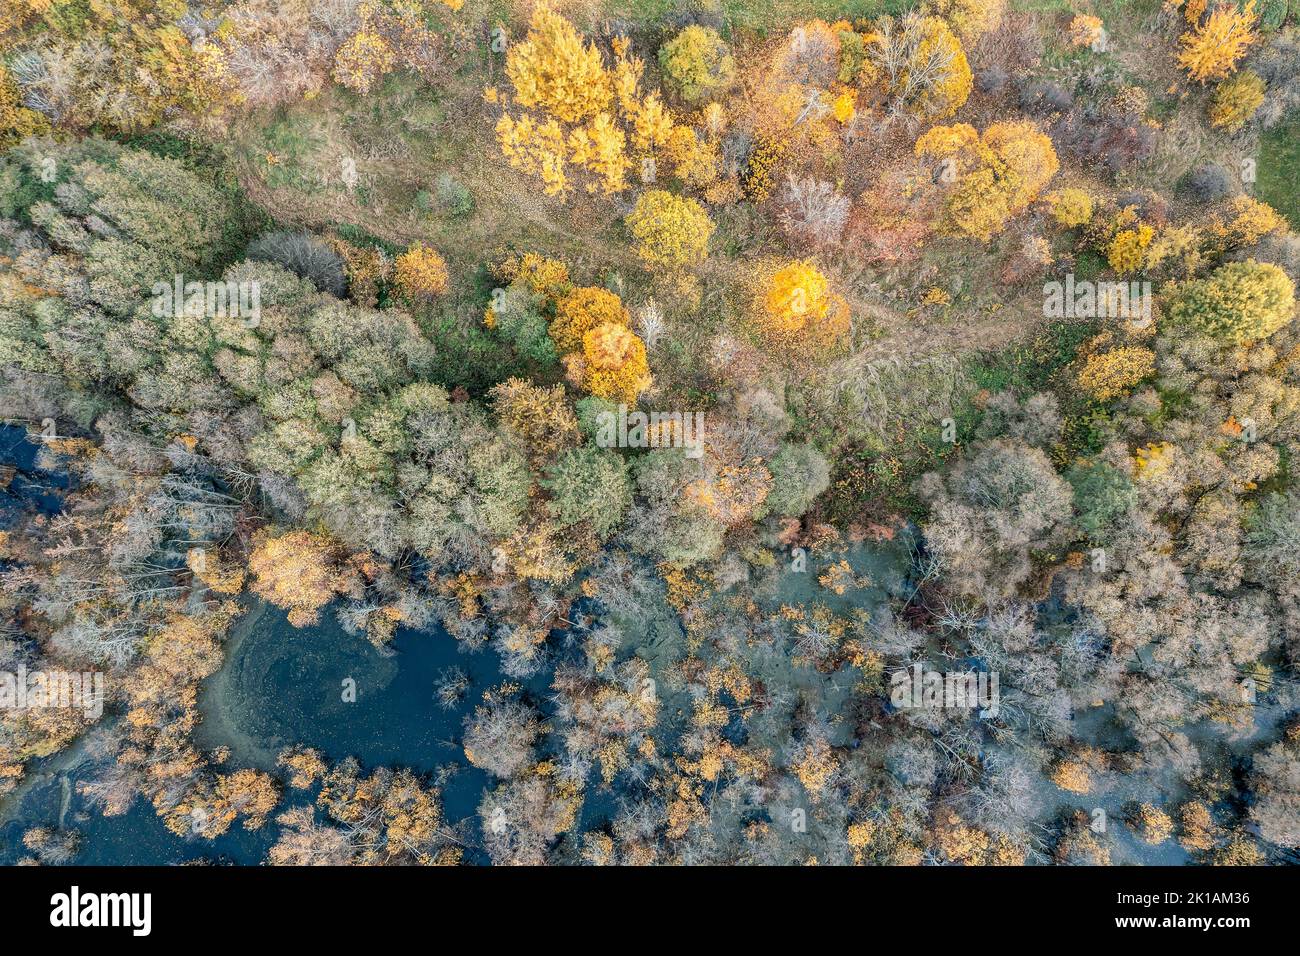 vista superior aérea del pantano en el bosque de otoño con coloridas copas de los árboles Foto de stock